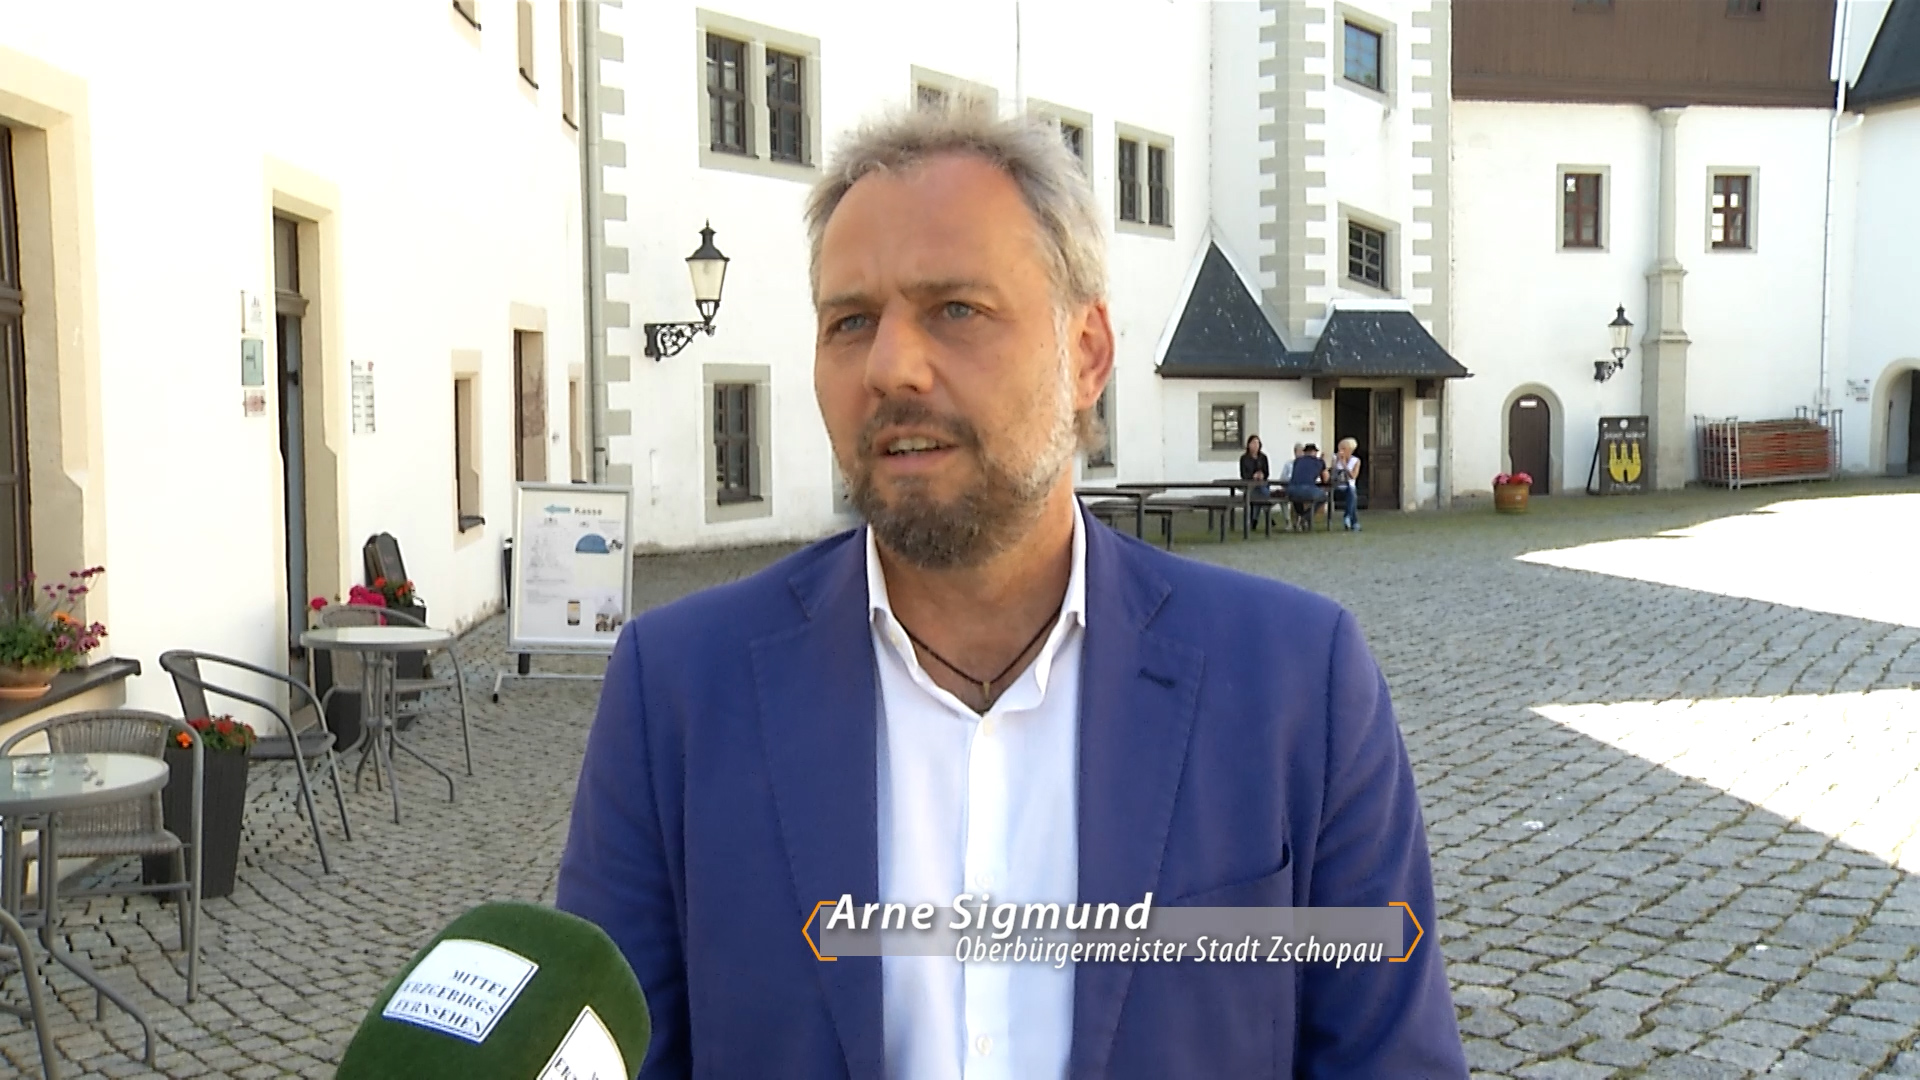 MEgional am 16. Juni 2022 - Zschopaus OB Arne Sigmund mit seinem Statement zur Wahl